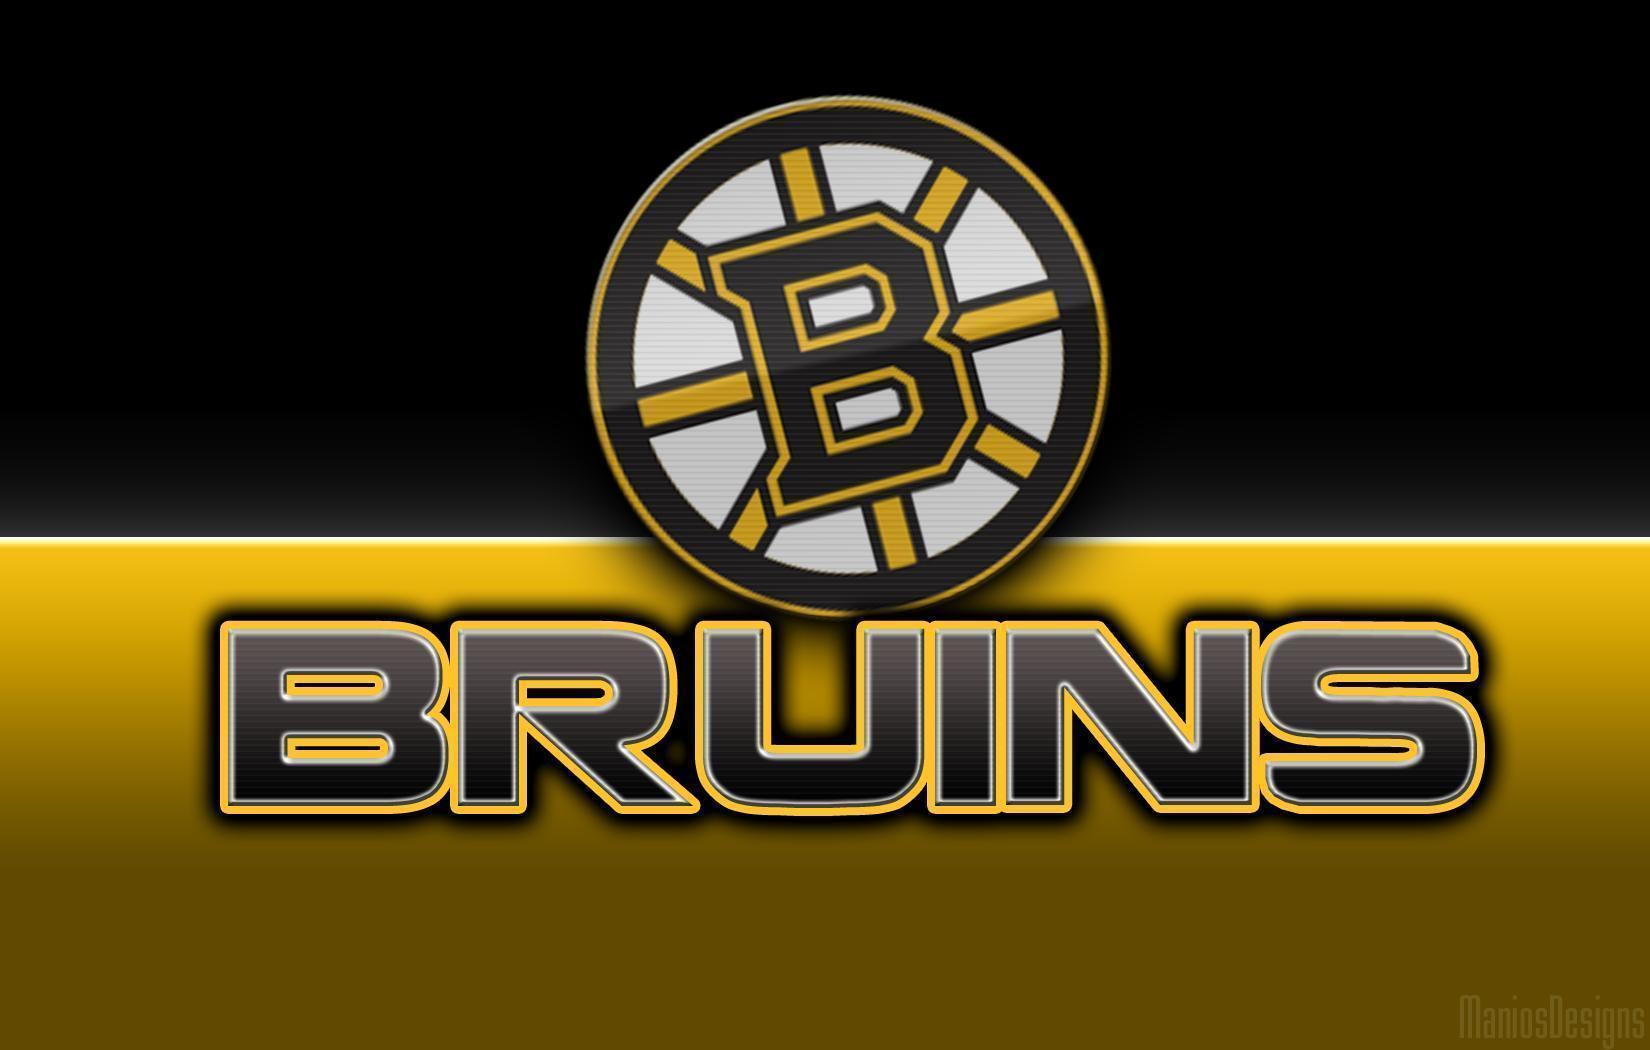 Imágenes HD de Boston Bruins. Fondos de pantalla de Boston Bruins